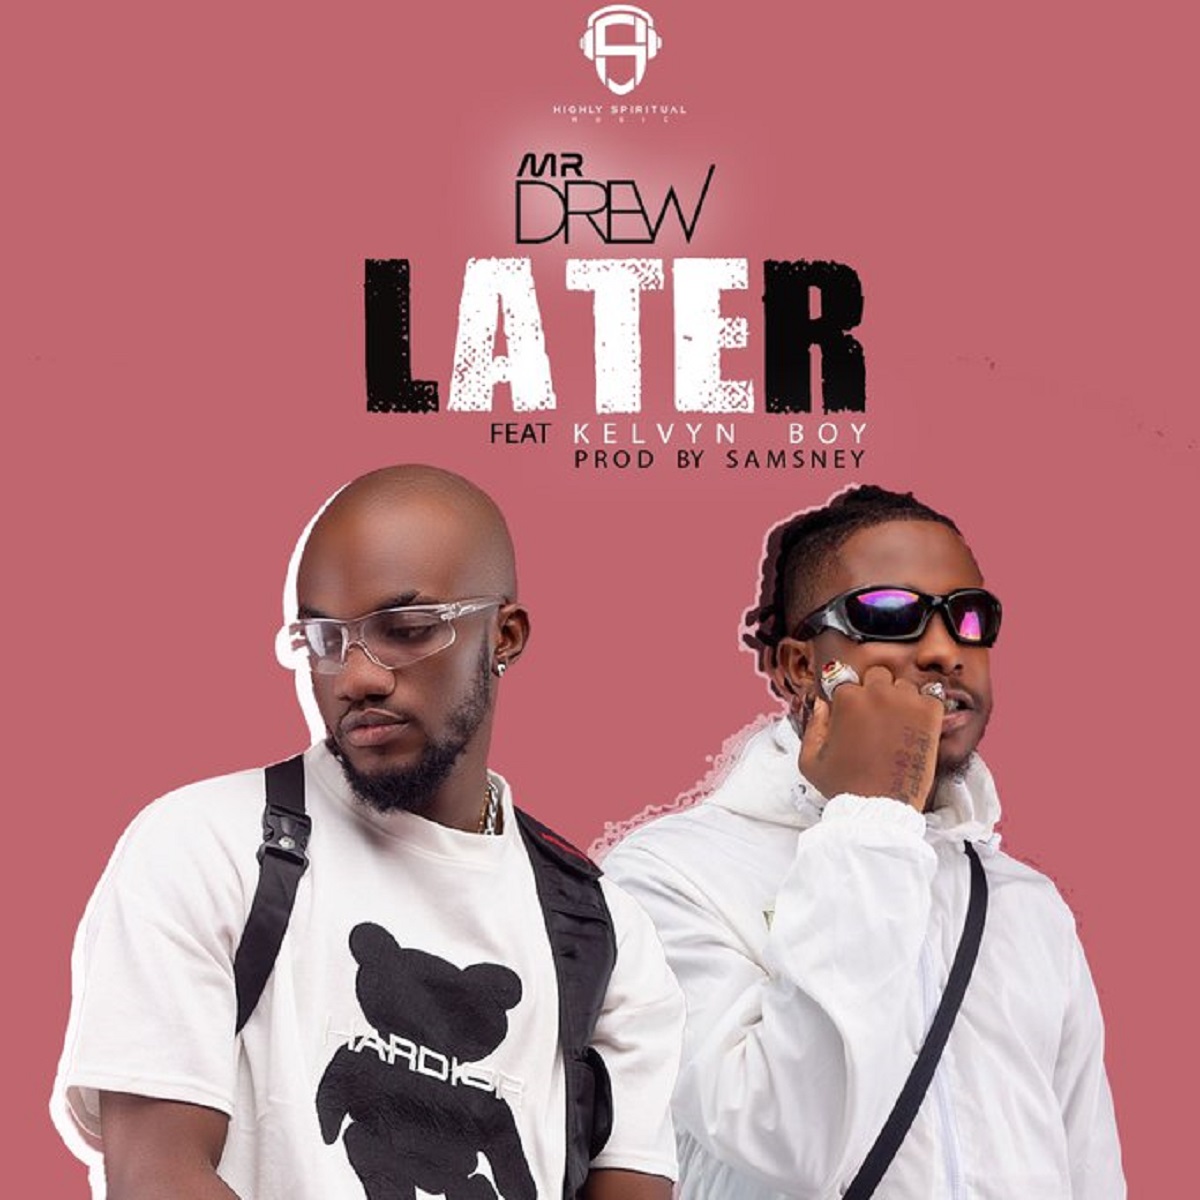 Lyrics Later by Mr Drew feat. Kelvyn Boy Ghana Music